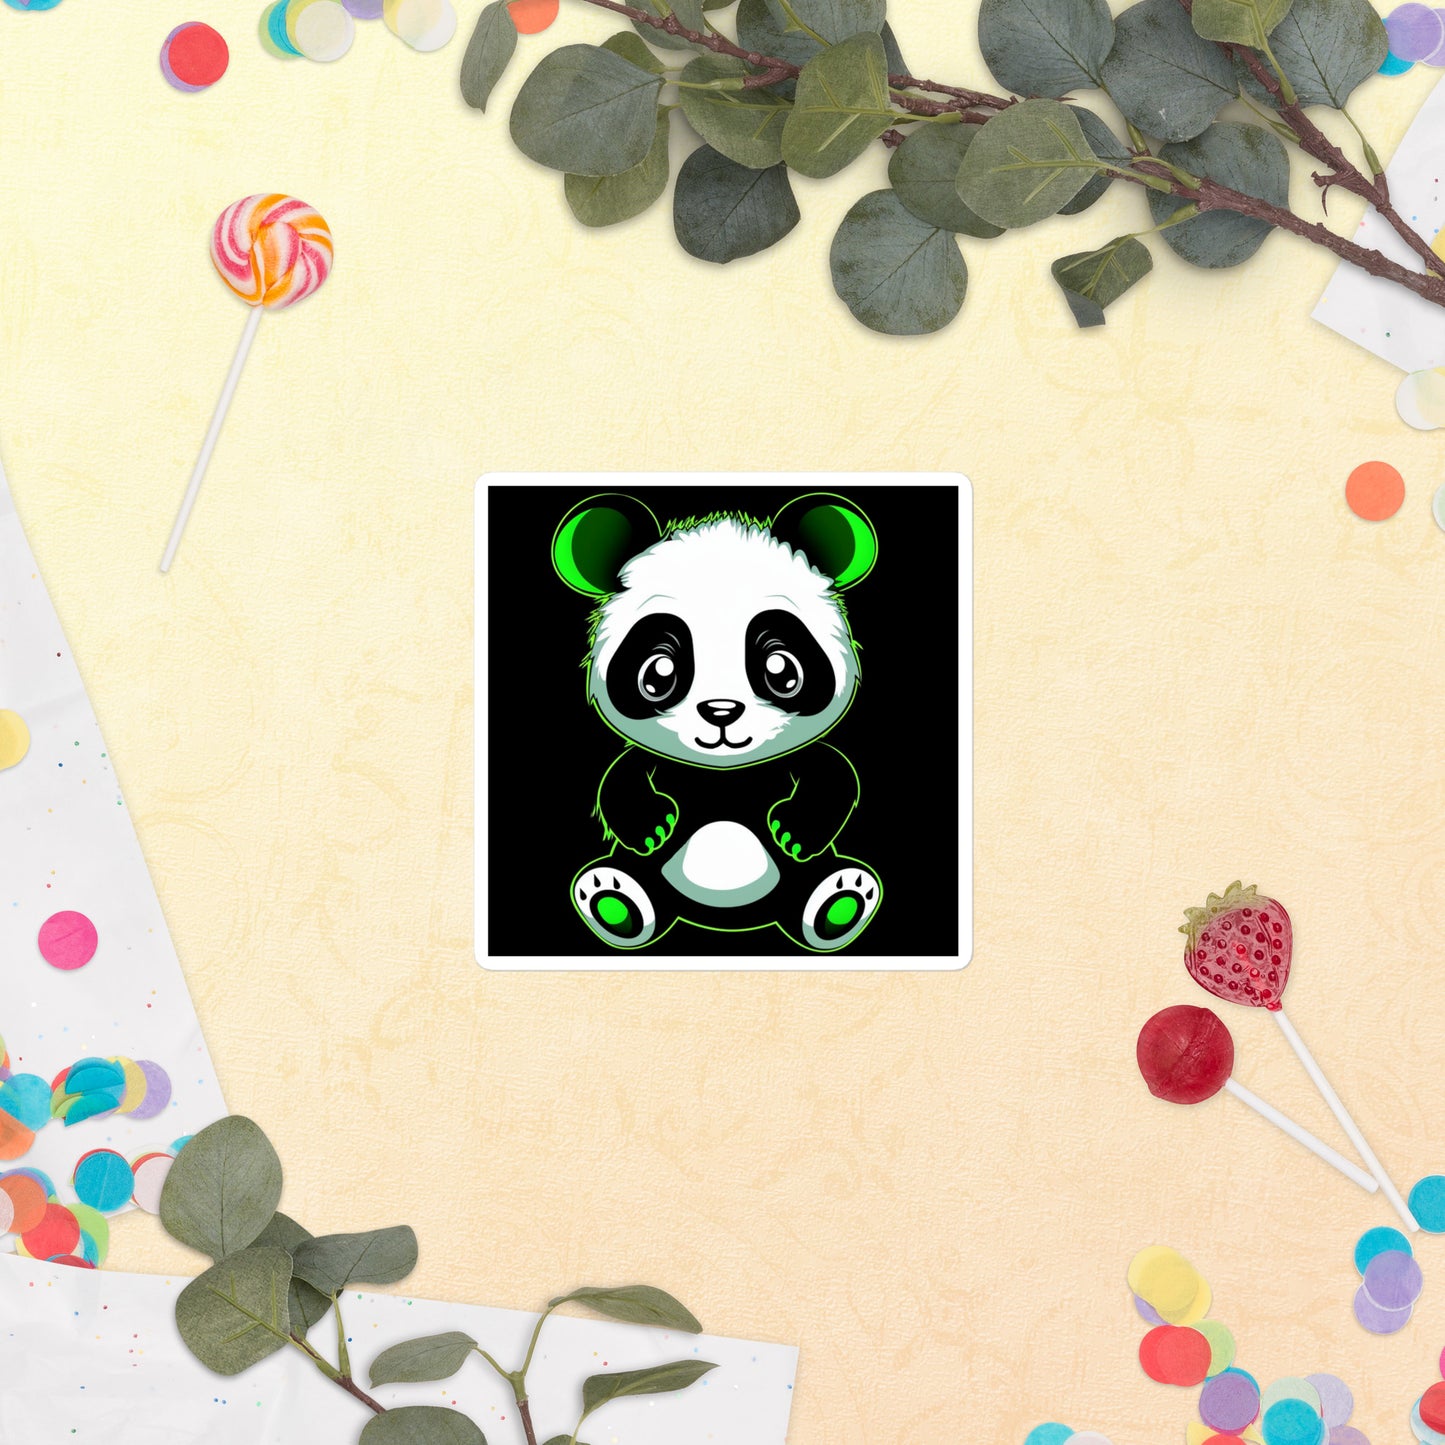 KBBNG Panda Bubble-Free Stickers